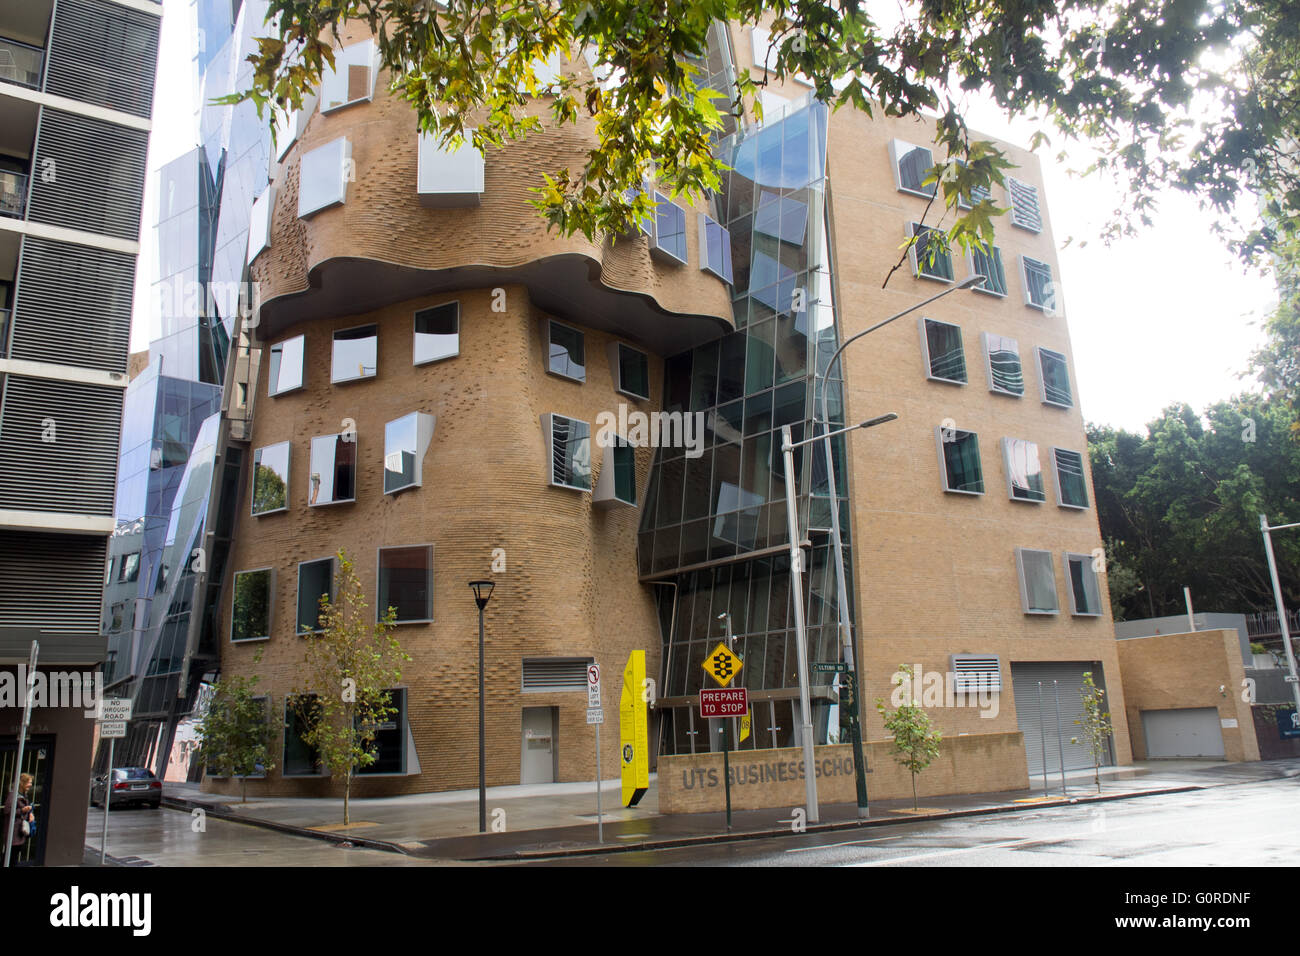 Dr Chau aile Chak Building, conçu par Frank Gehry. Banque D'Images